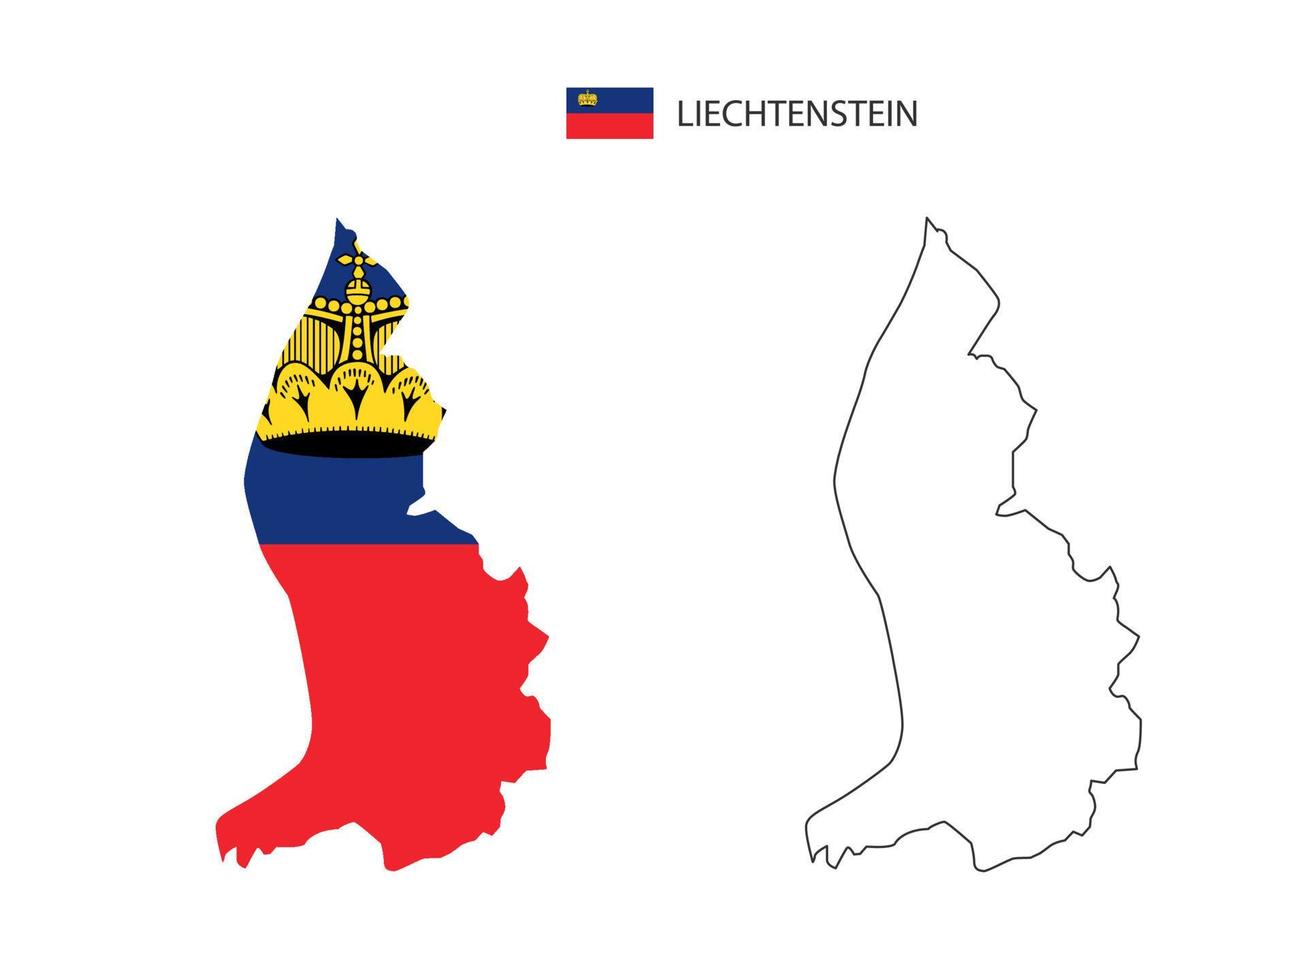 vetor da cidade do mapa de liechtenstein dividido pelo estilo de simplicidade do contorno. tem 2 versões, versão de linha fina preta e cor da versão da bandeira do país. ambos os mapas estavam no fundo branco.